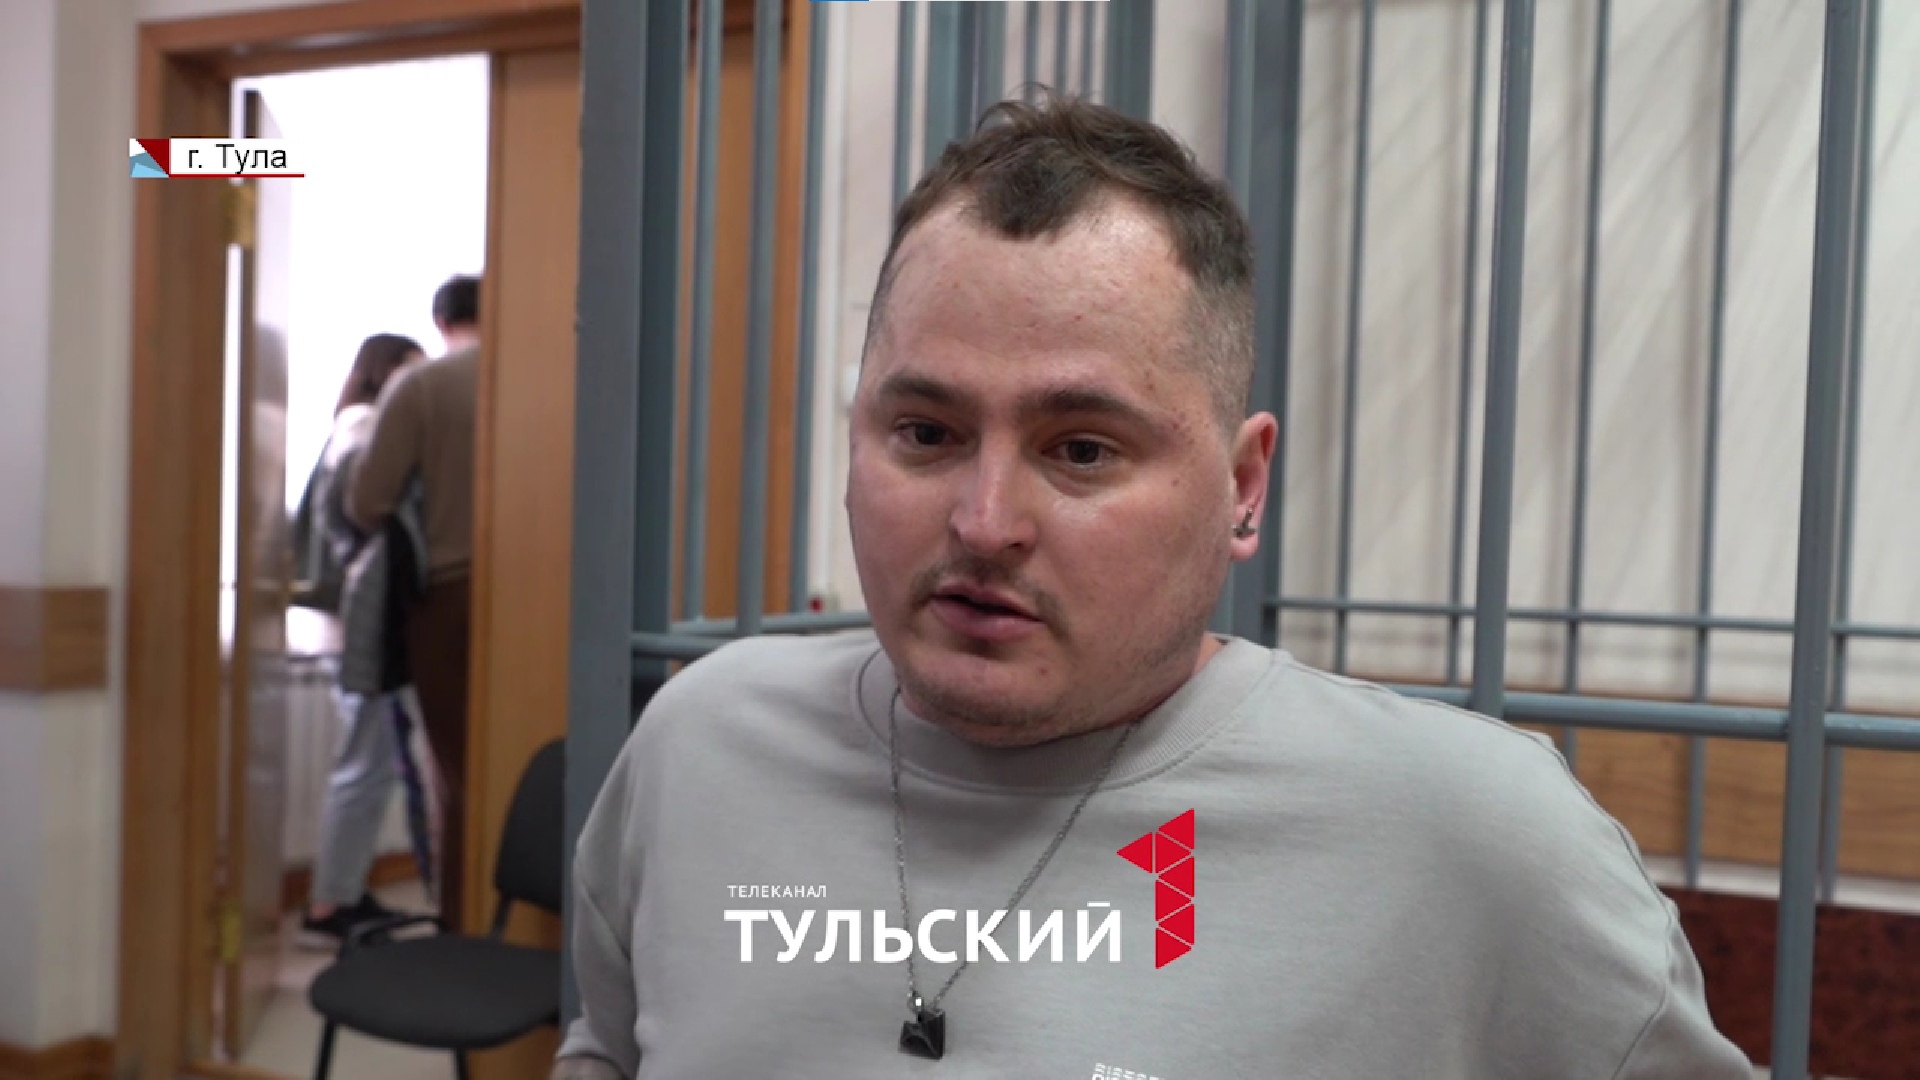 Артур Контрабаев: "Меня запрещено по закону сажать в тюрьму"